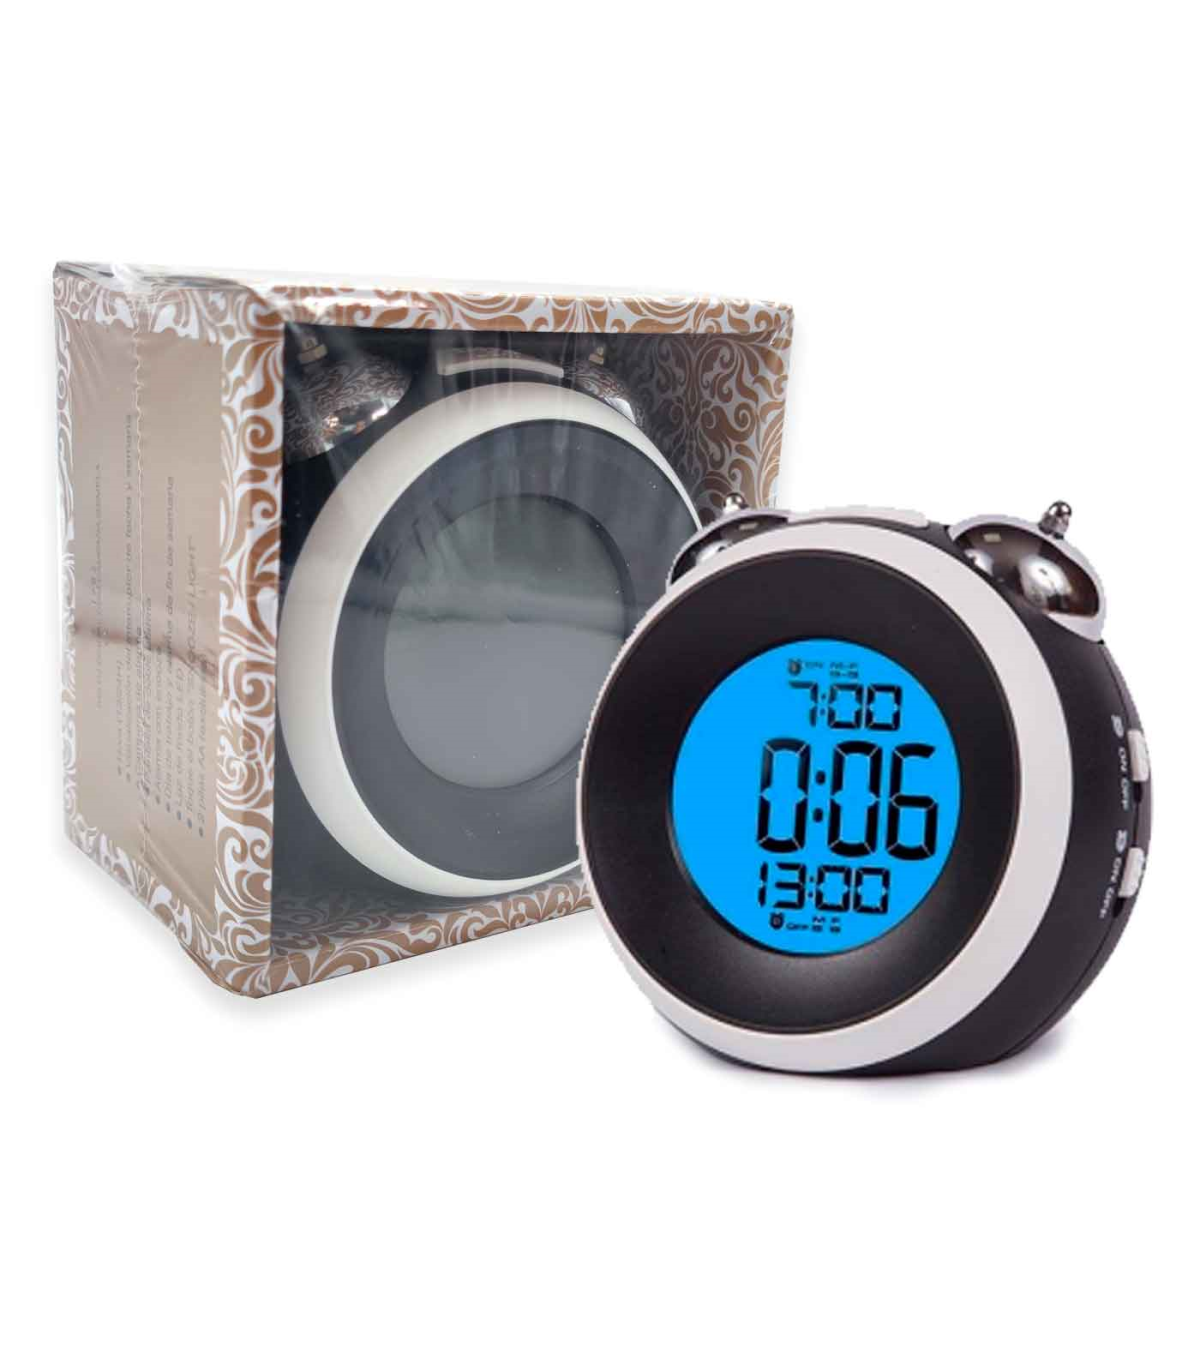 Tradineur - Reloj despertador infantil analógico de plástico, incluye luz y  función snooze, botón de apagado, funcionamiento con